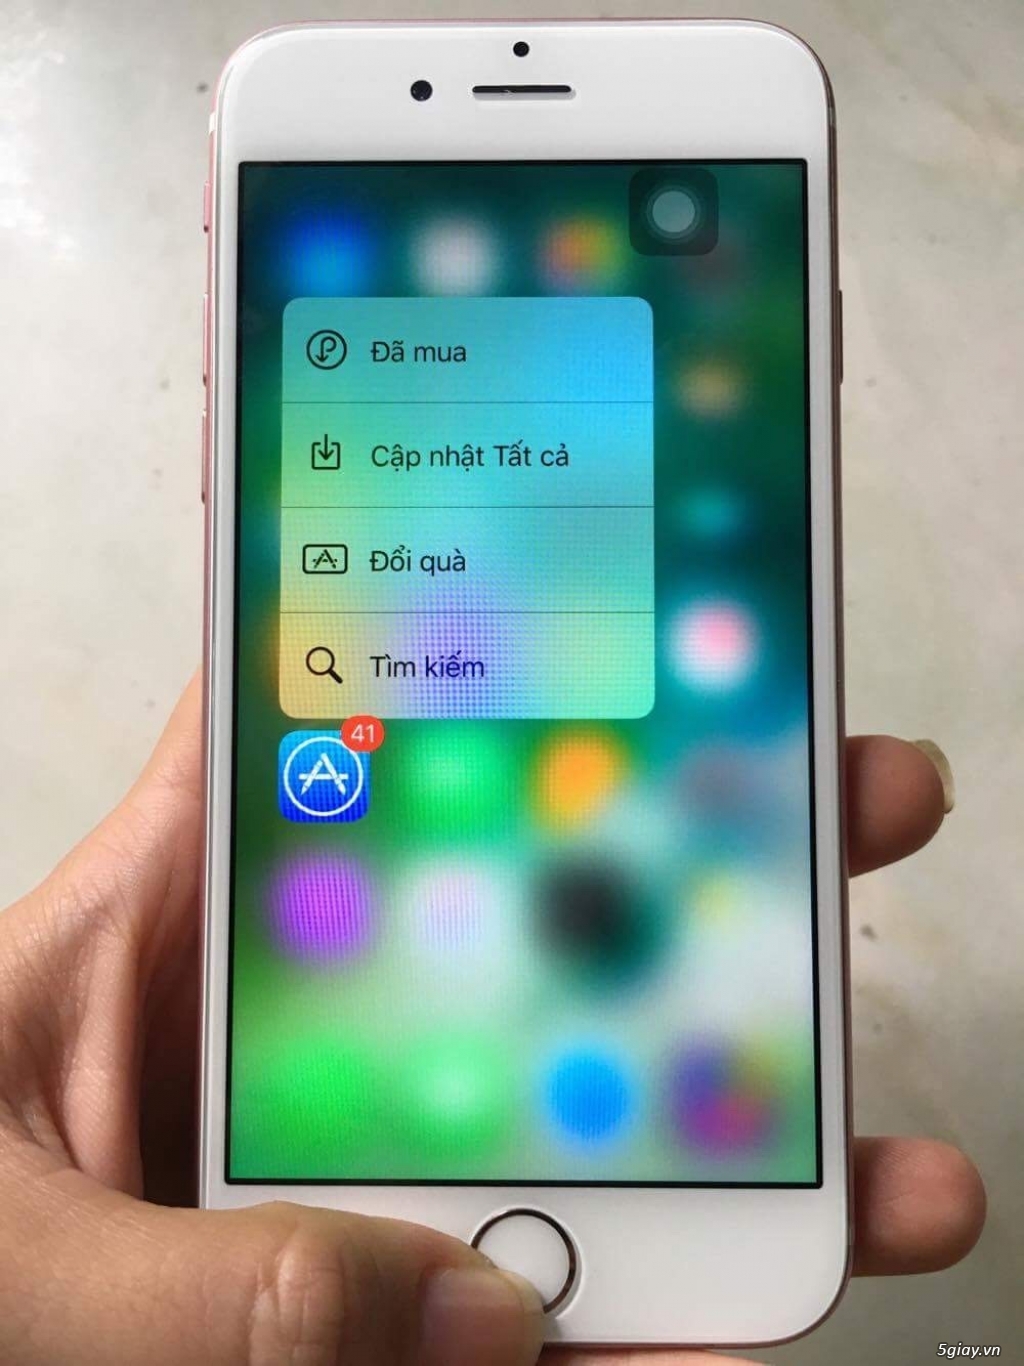 iPhone 6s Hồng 16Gb hàng Châu Âu máy đẹp 99% Fullbox BH 29/5/2018 - 2